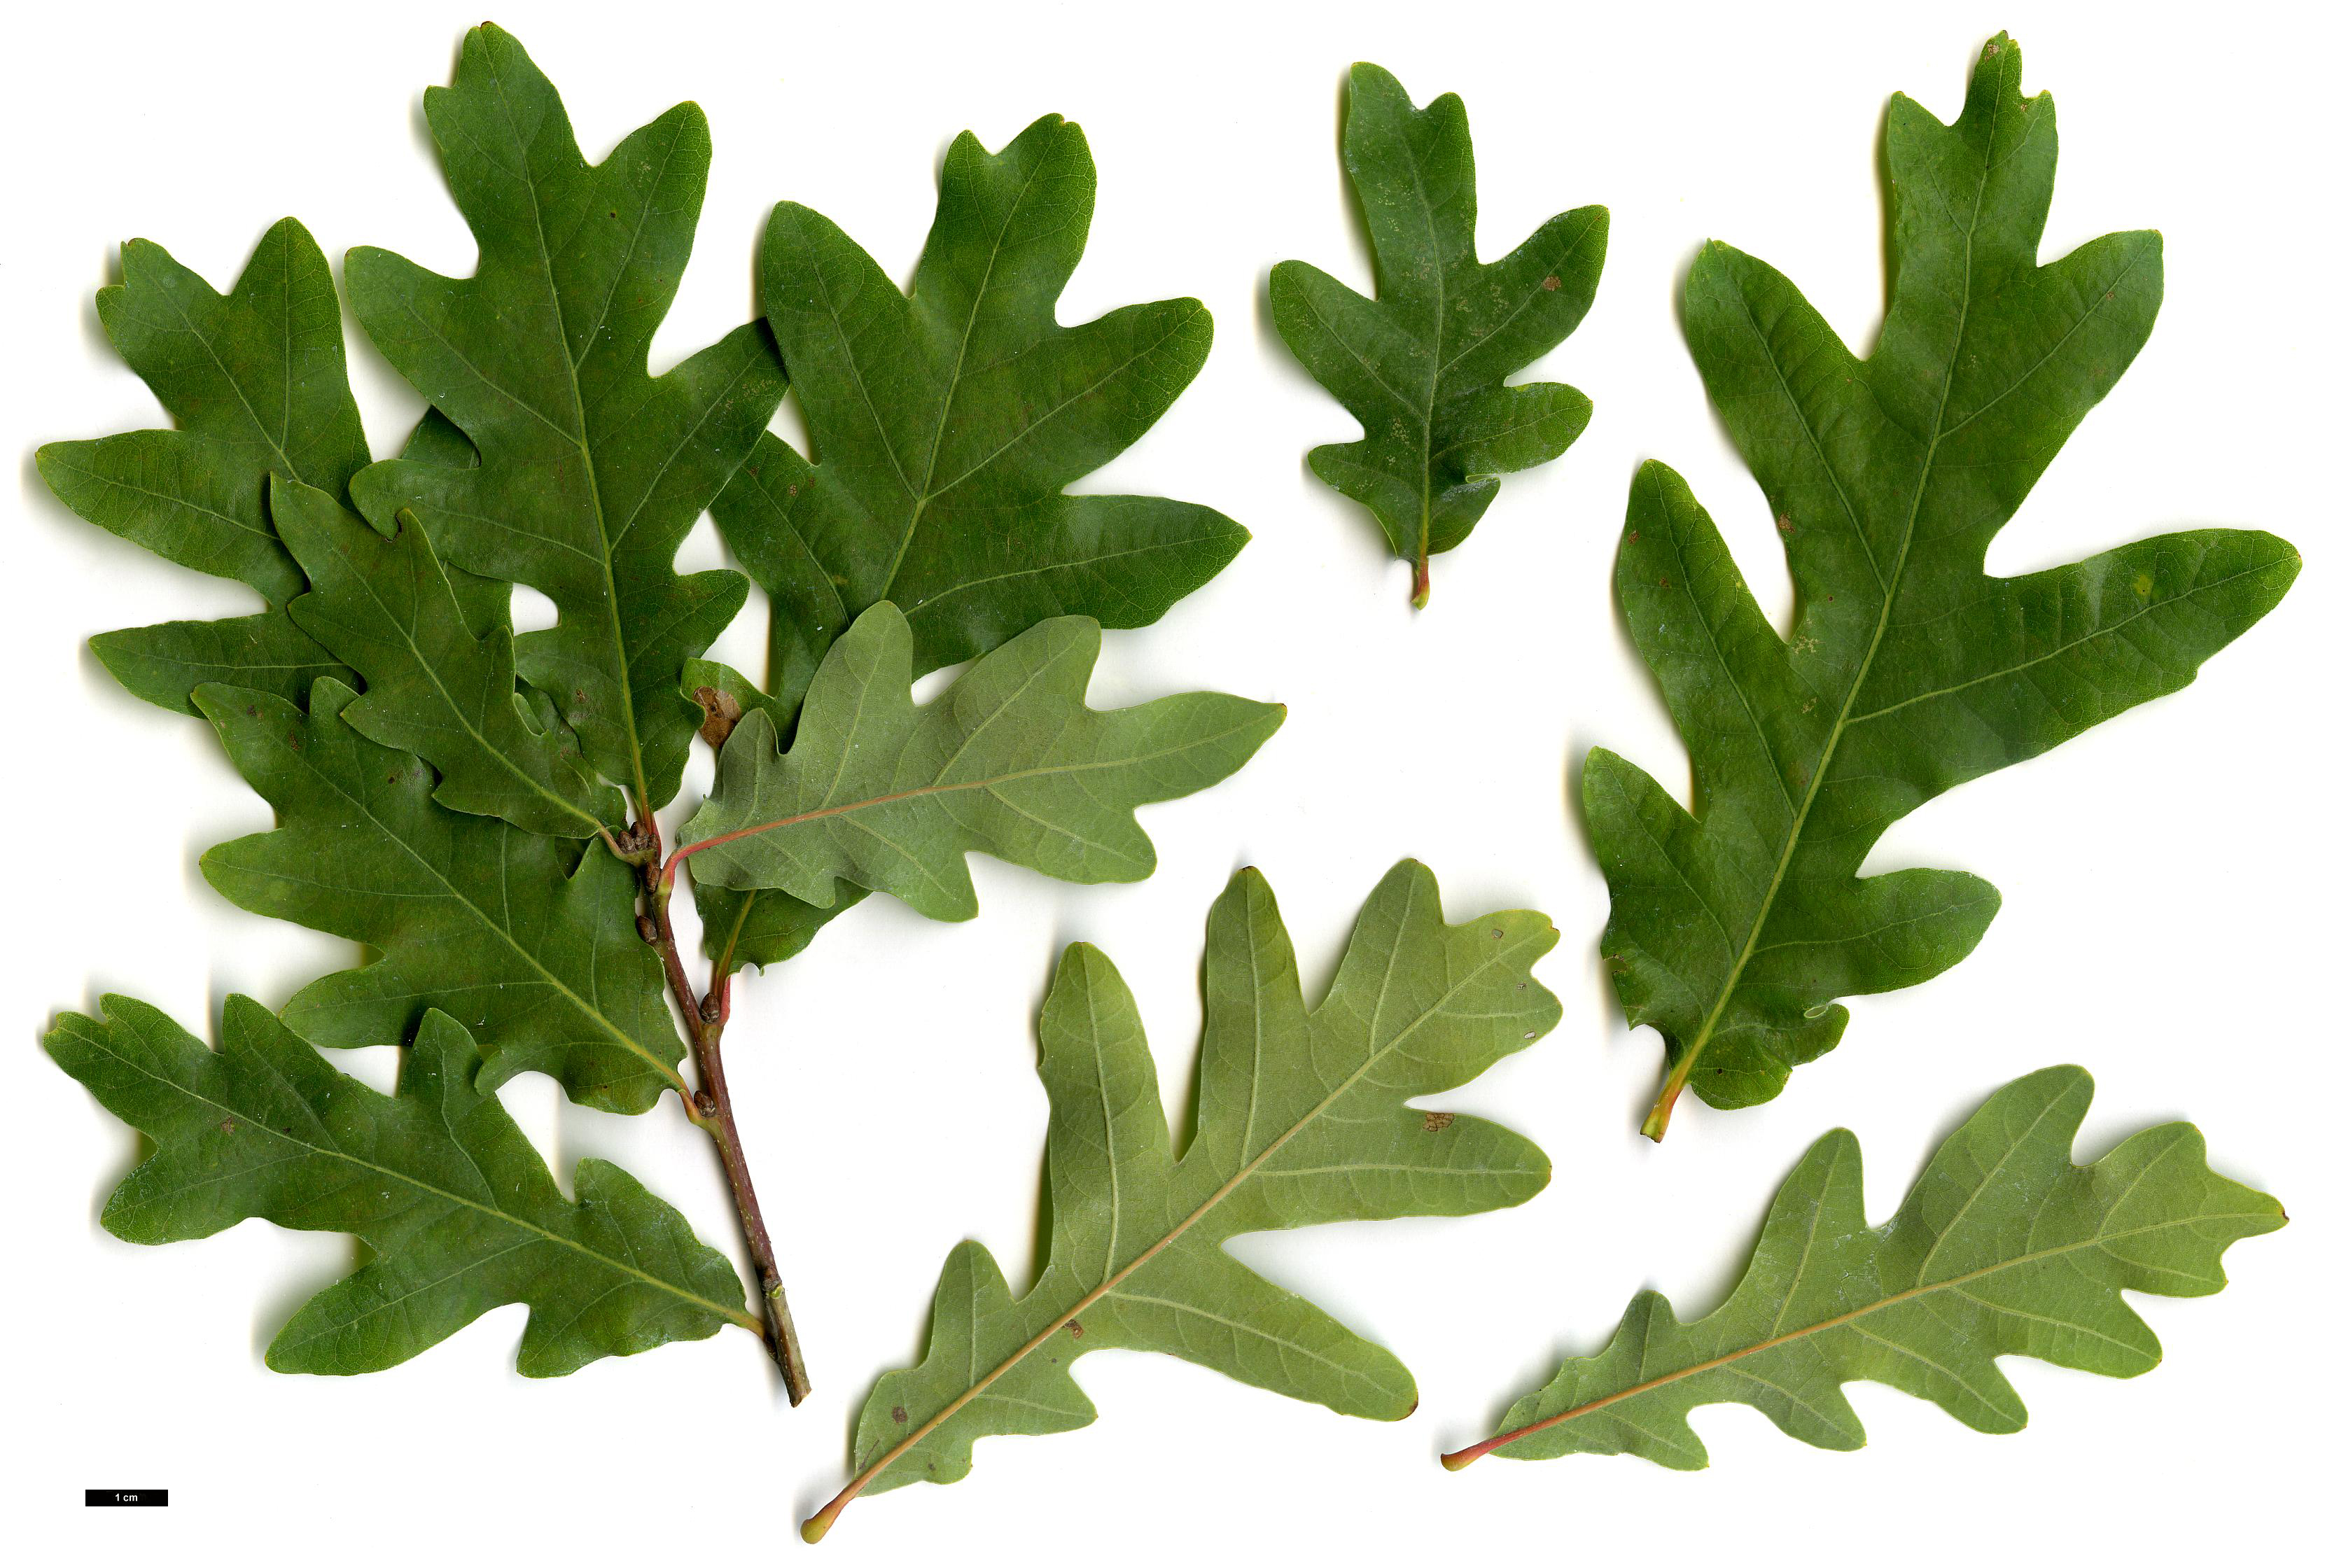 High resolution image: Family: Fagaceae - Genus: Quercus - Taxon: ×bimundorum - SpeciesSub: 'Crimschmidt' (Q.alba × Q.robur)